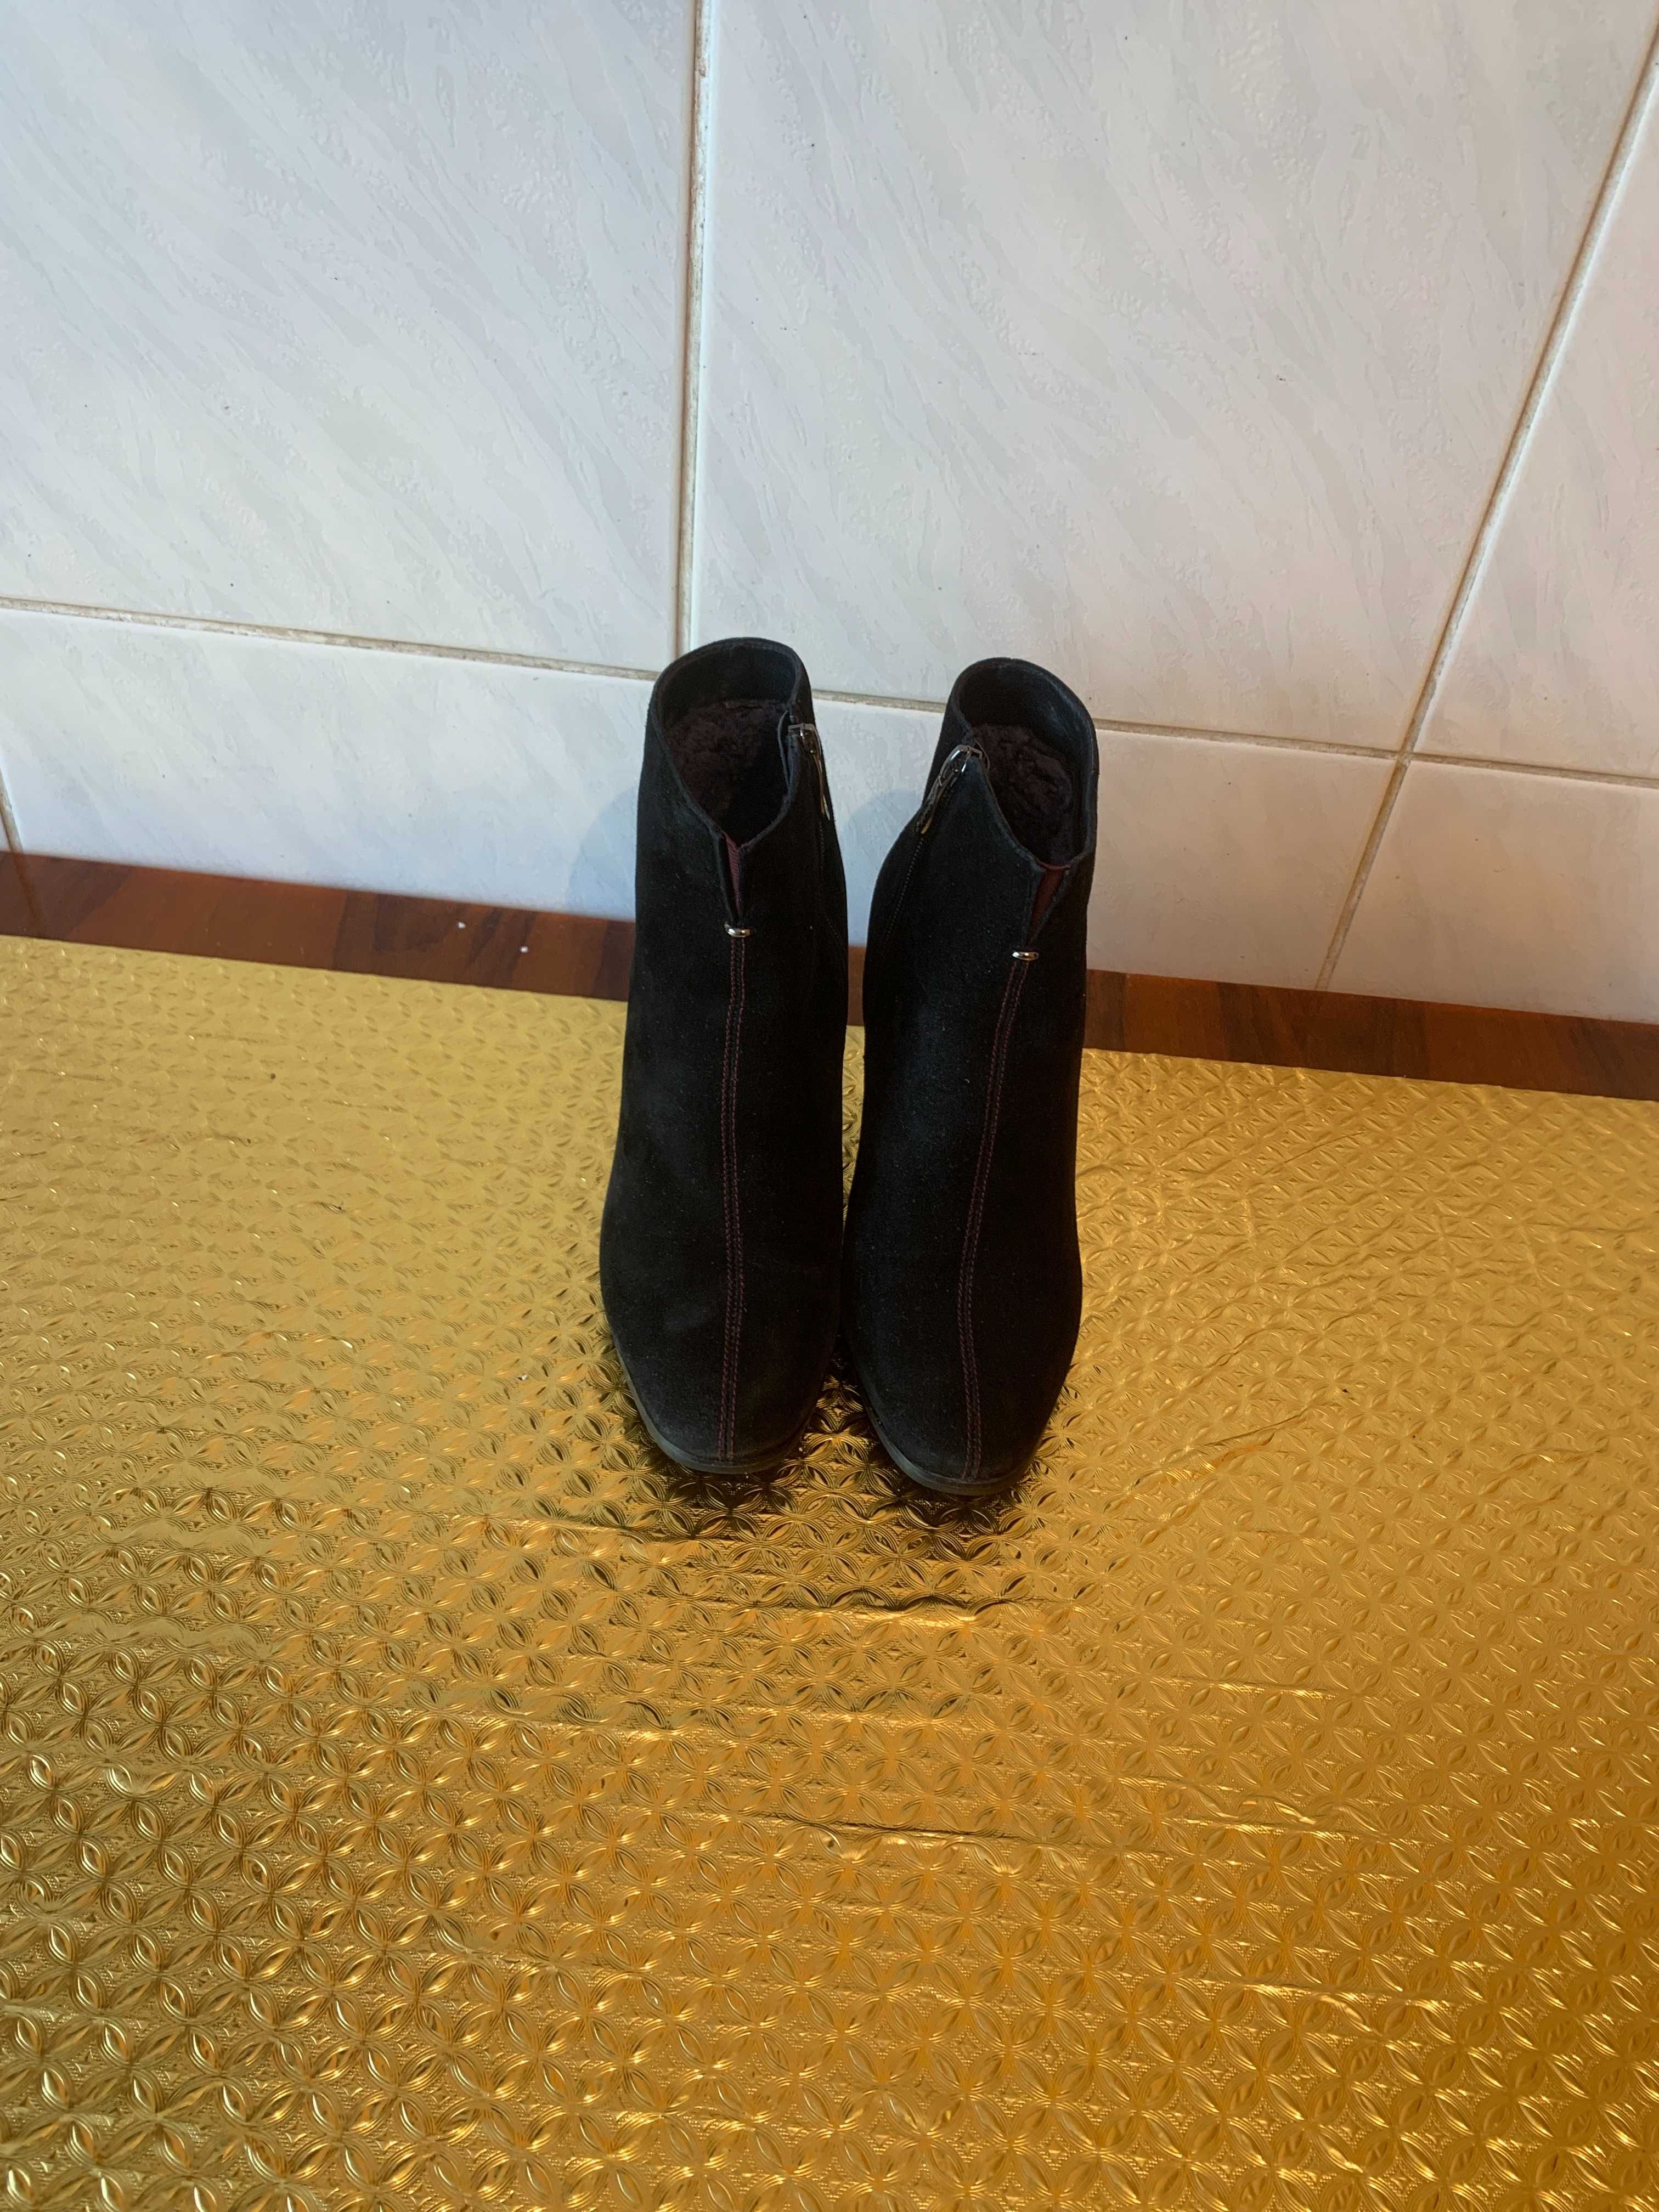 Продам сапожки женские из замши черного цвета (сделано в Италии)